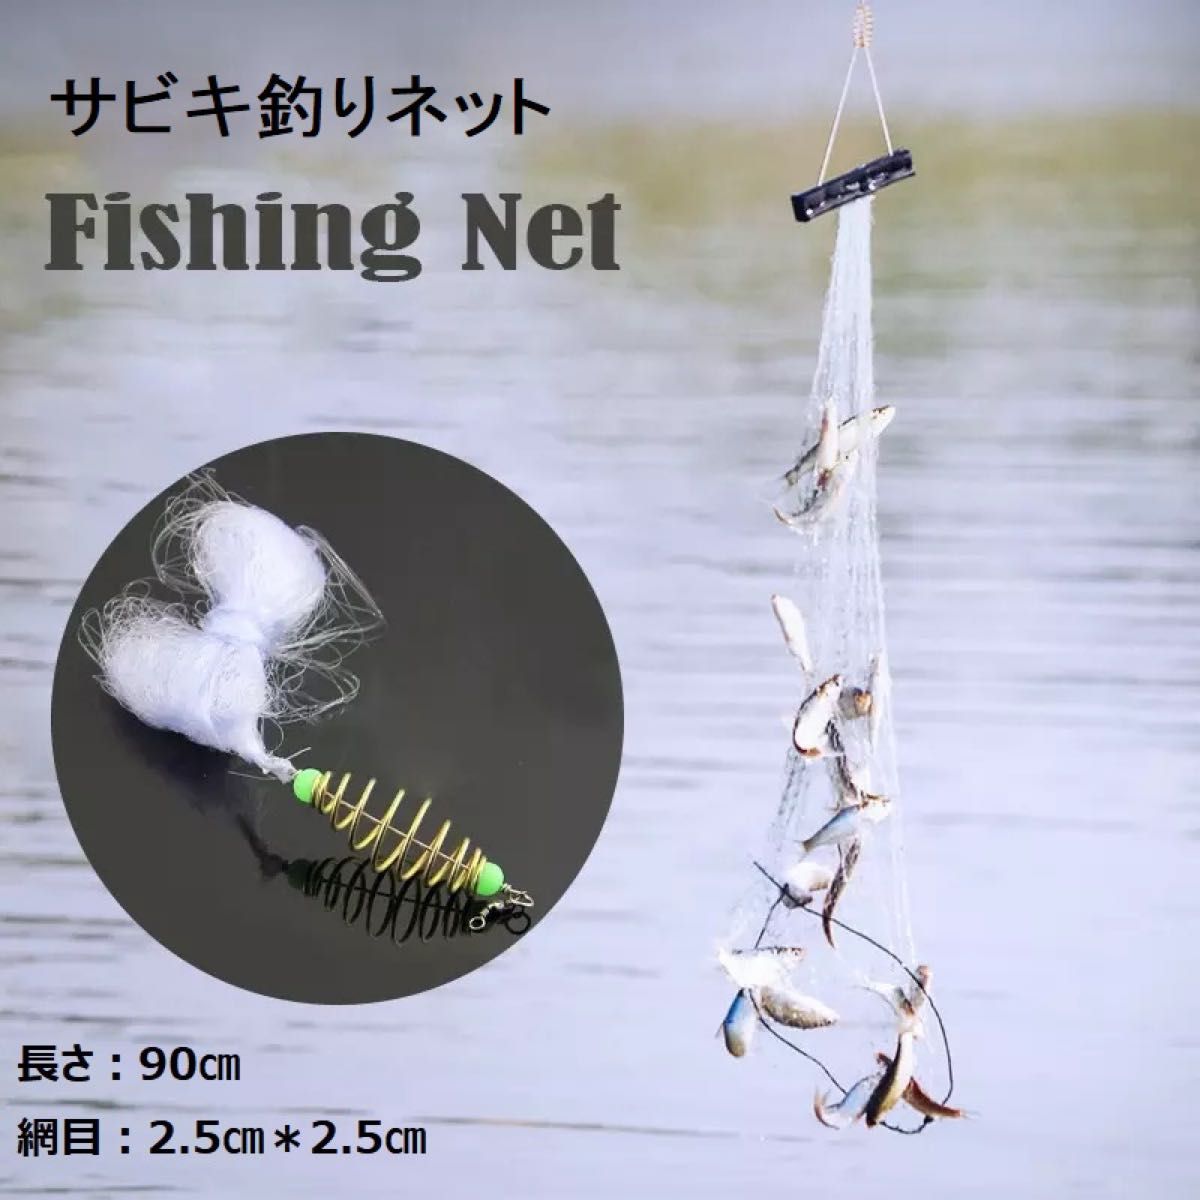 サビキ釣りネット 釣りネット 2個セット 仕掛け網 爆釣り 定置網 漁具 フィッシング 網 ネット6